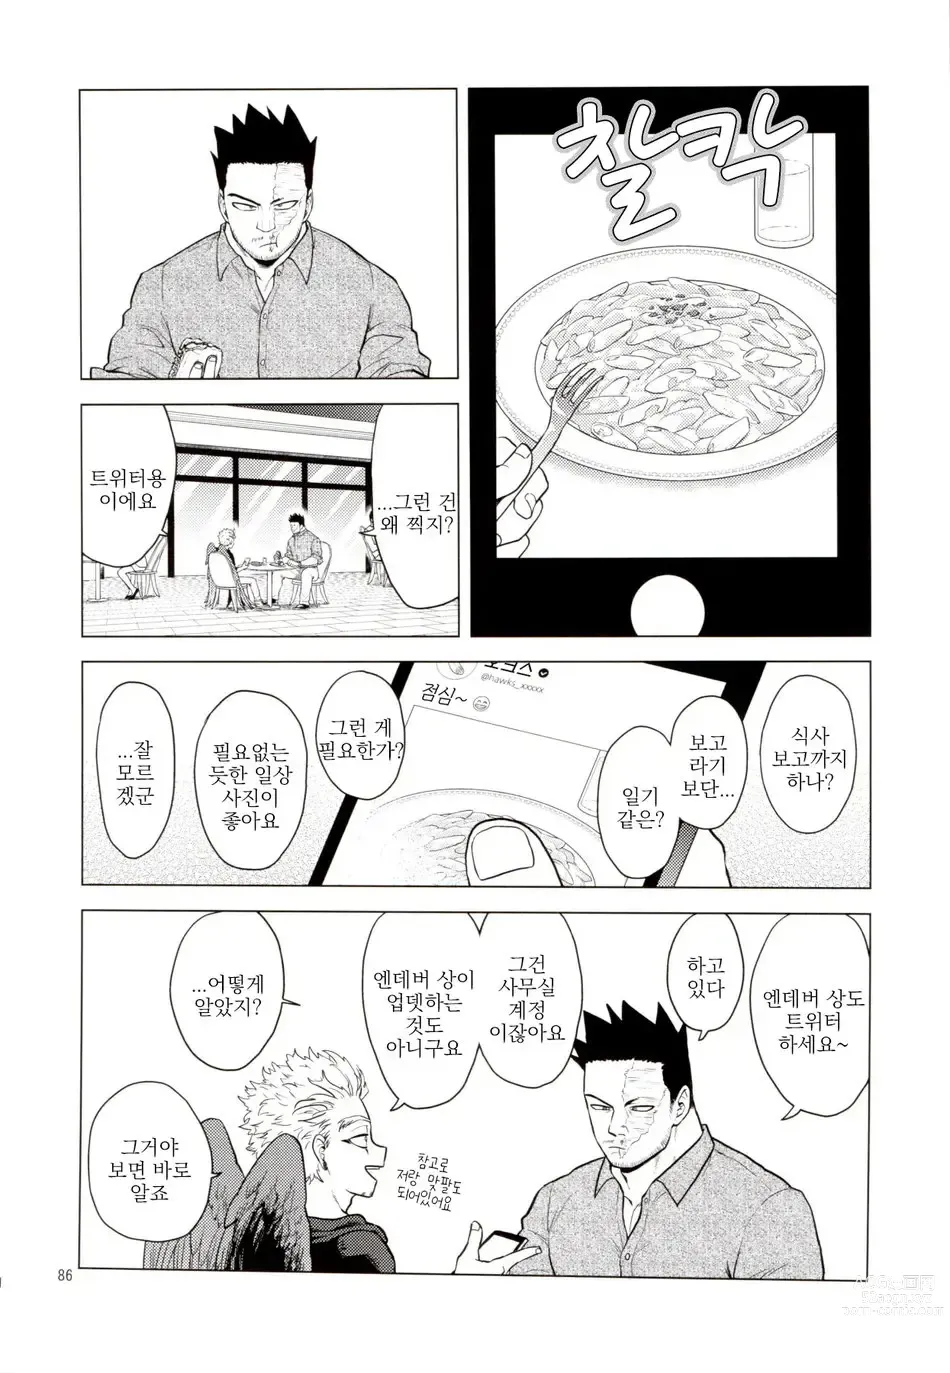 Page 85 of doujinshi Enholog #01